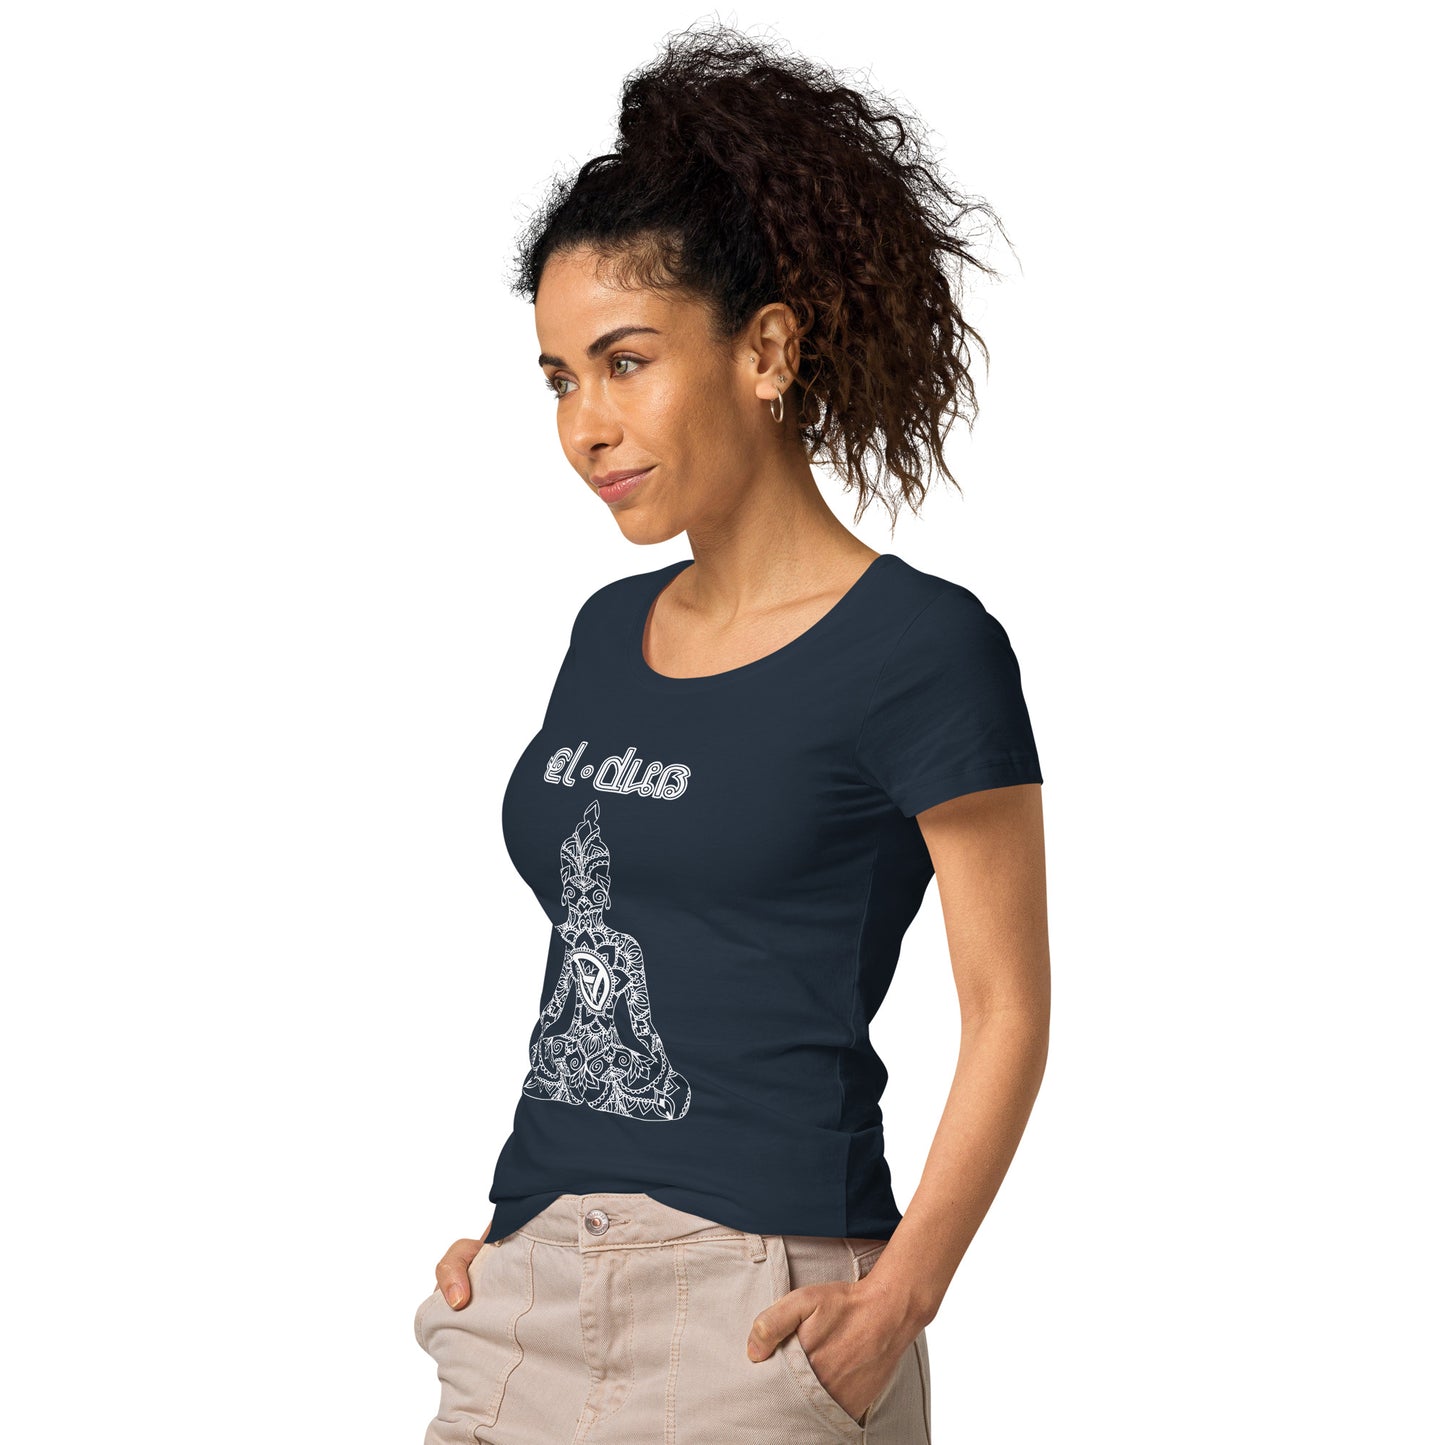 El Dub's Women’s basic organic t-shirt